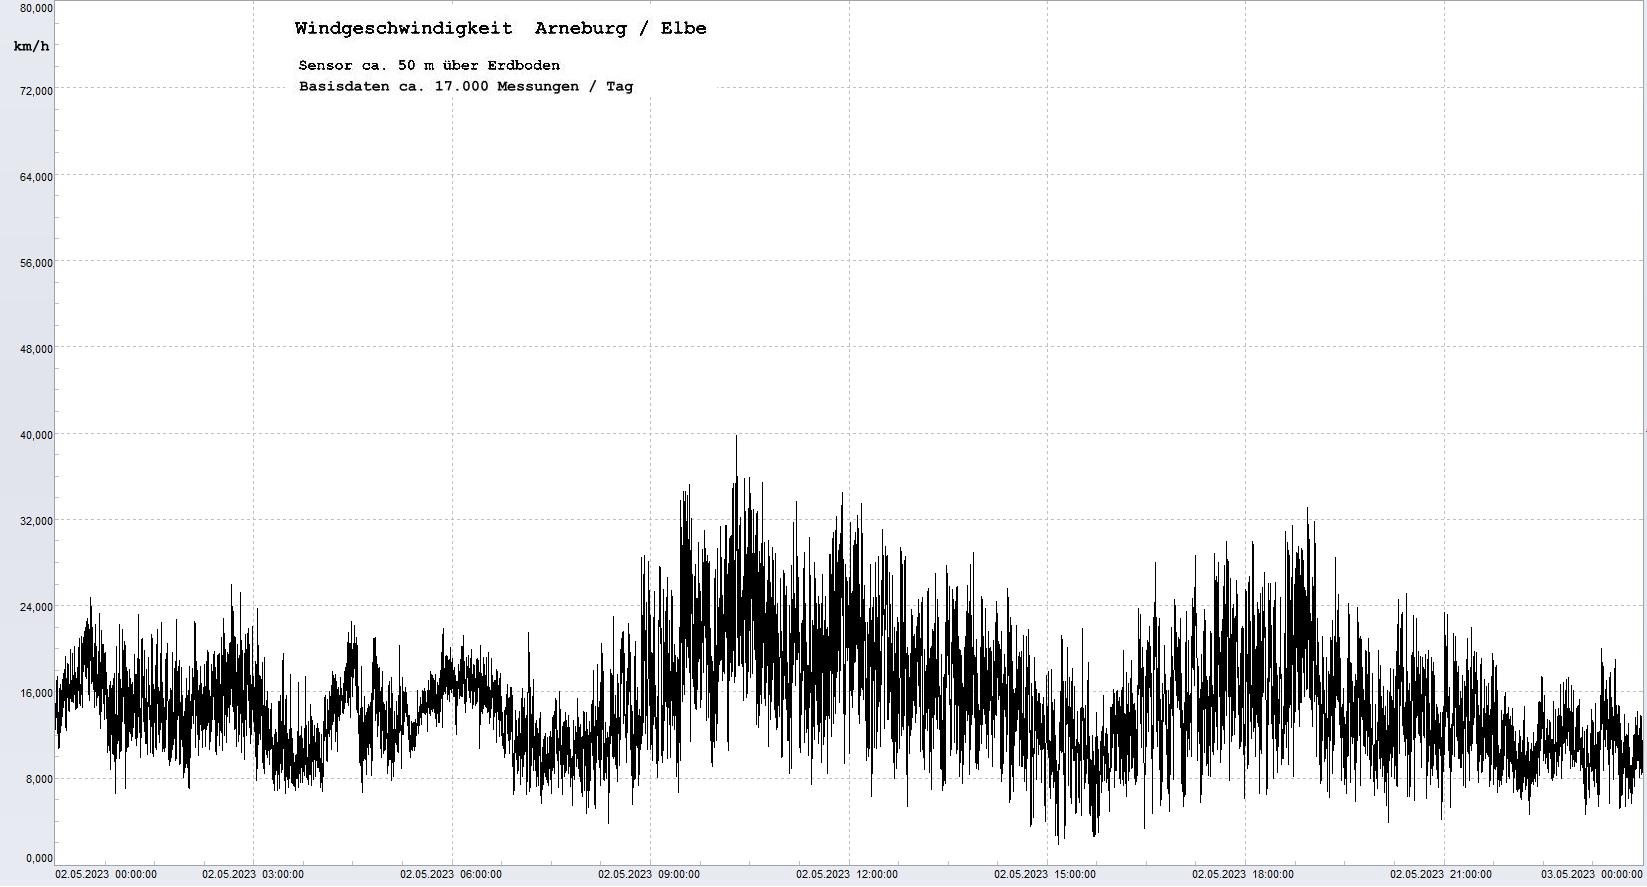 Arneburg Tages-Diagramm Winddaten, 02.05.2023
  Diagramm, Sensor auf Gebude, ca. 50 m ber Erdboden, Basis: 5s-Aufzeichnung